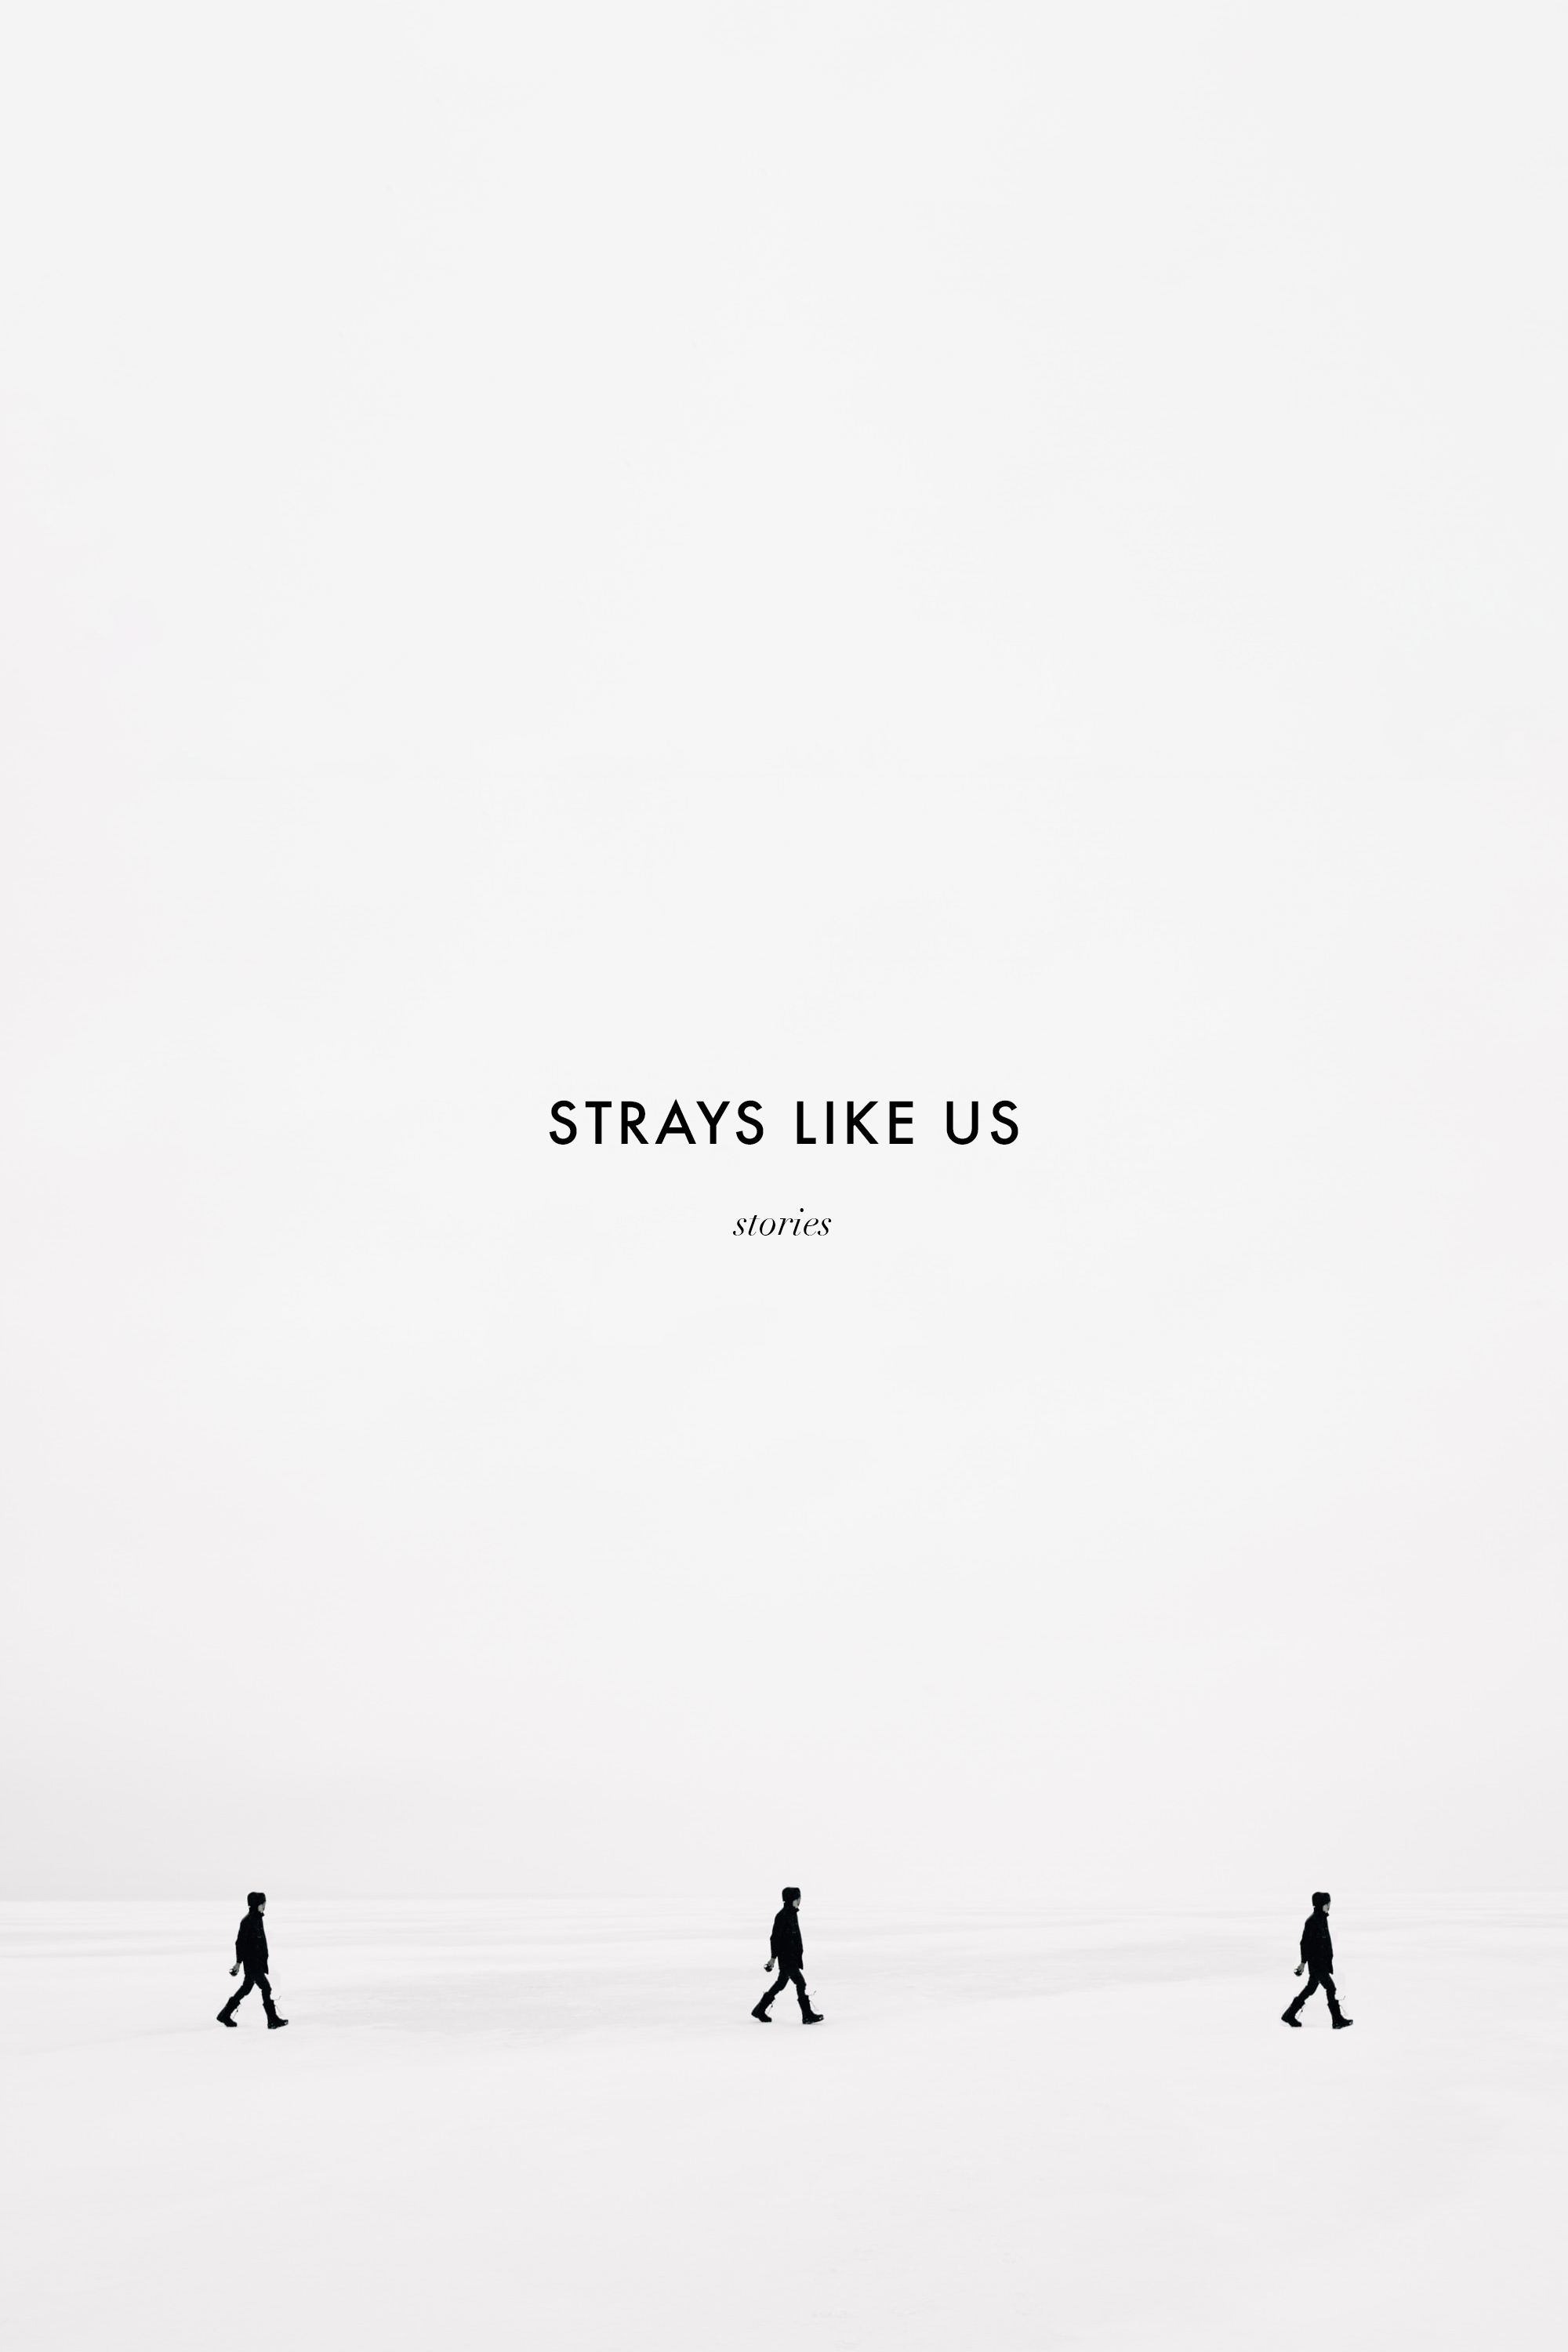 Strays Like Us by Garrett Francis